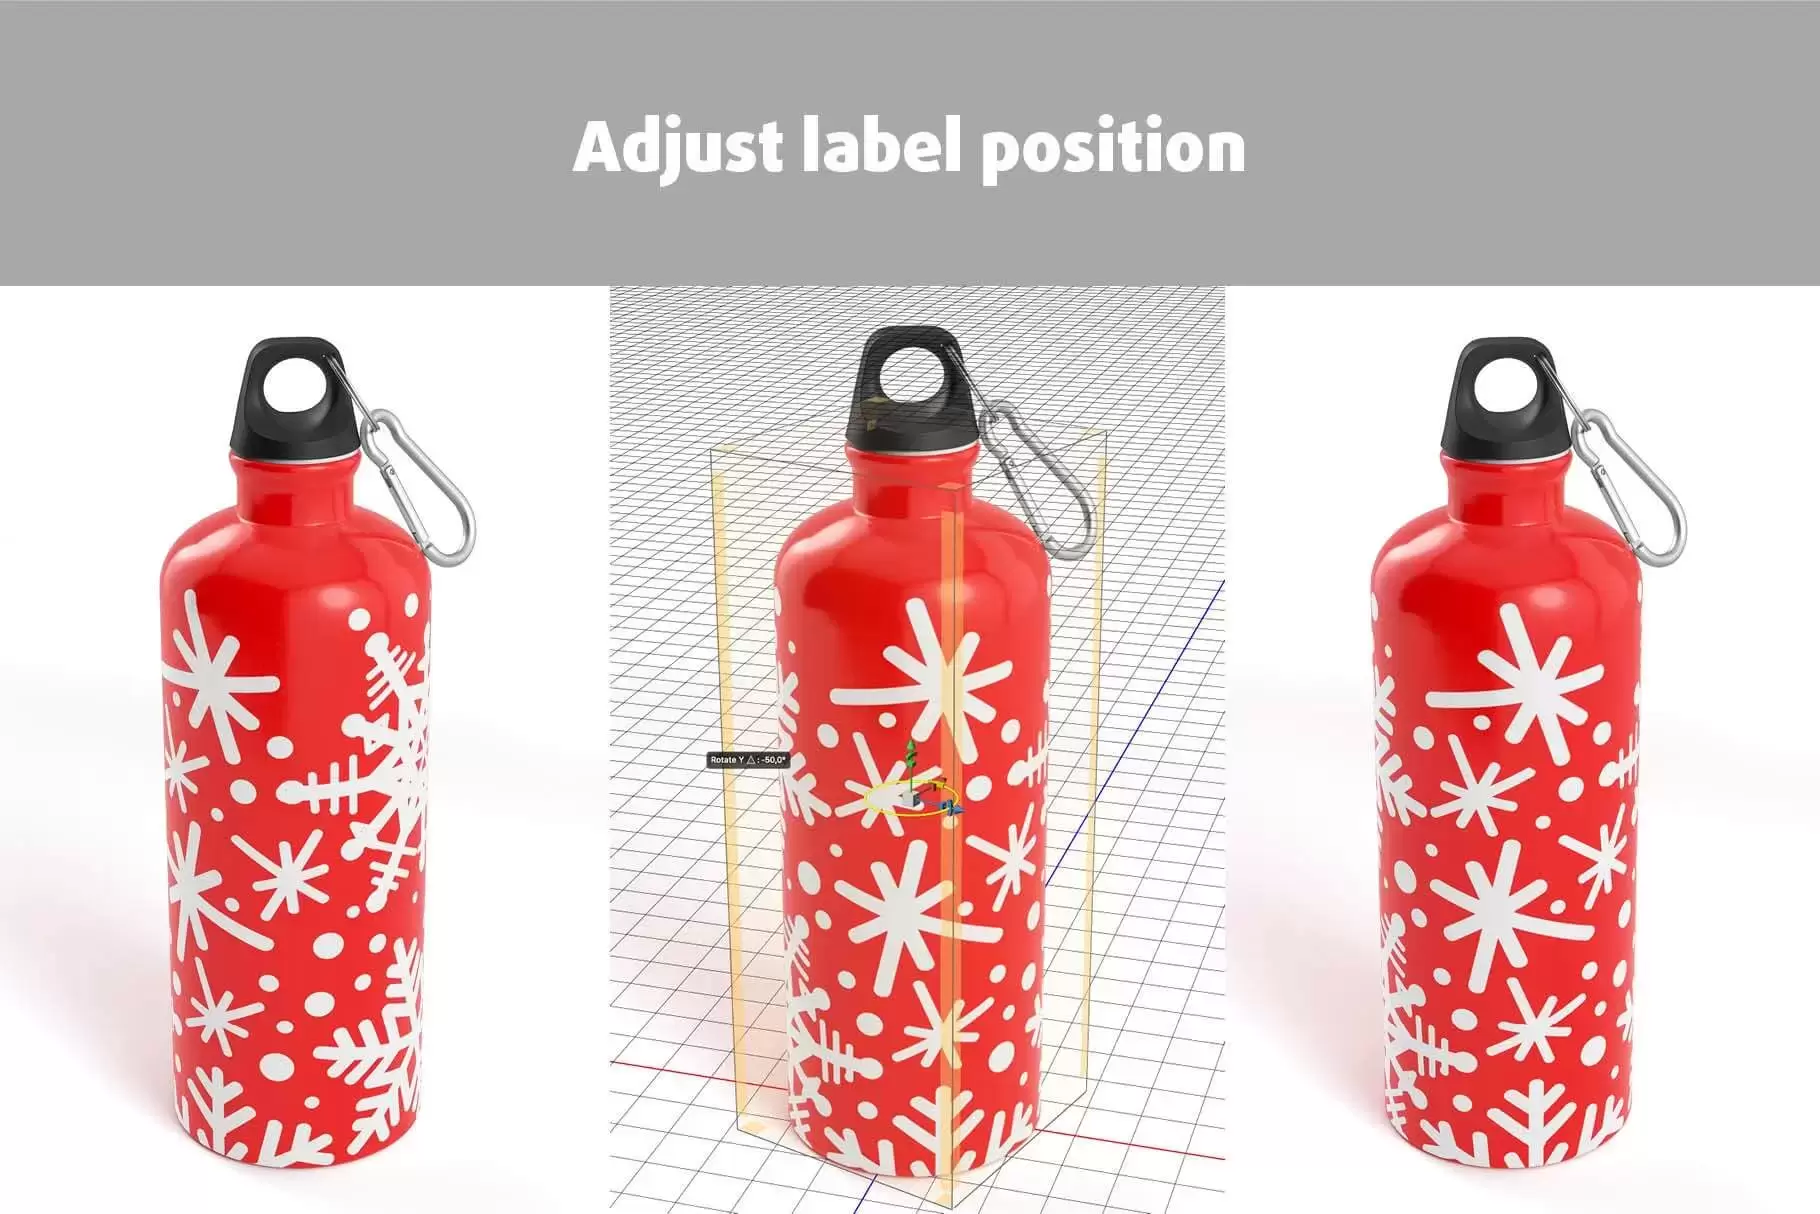 金属铝材质运动水瓶样机 (psd)免费下载插图3